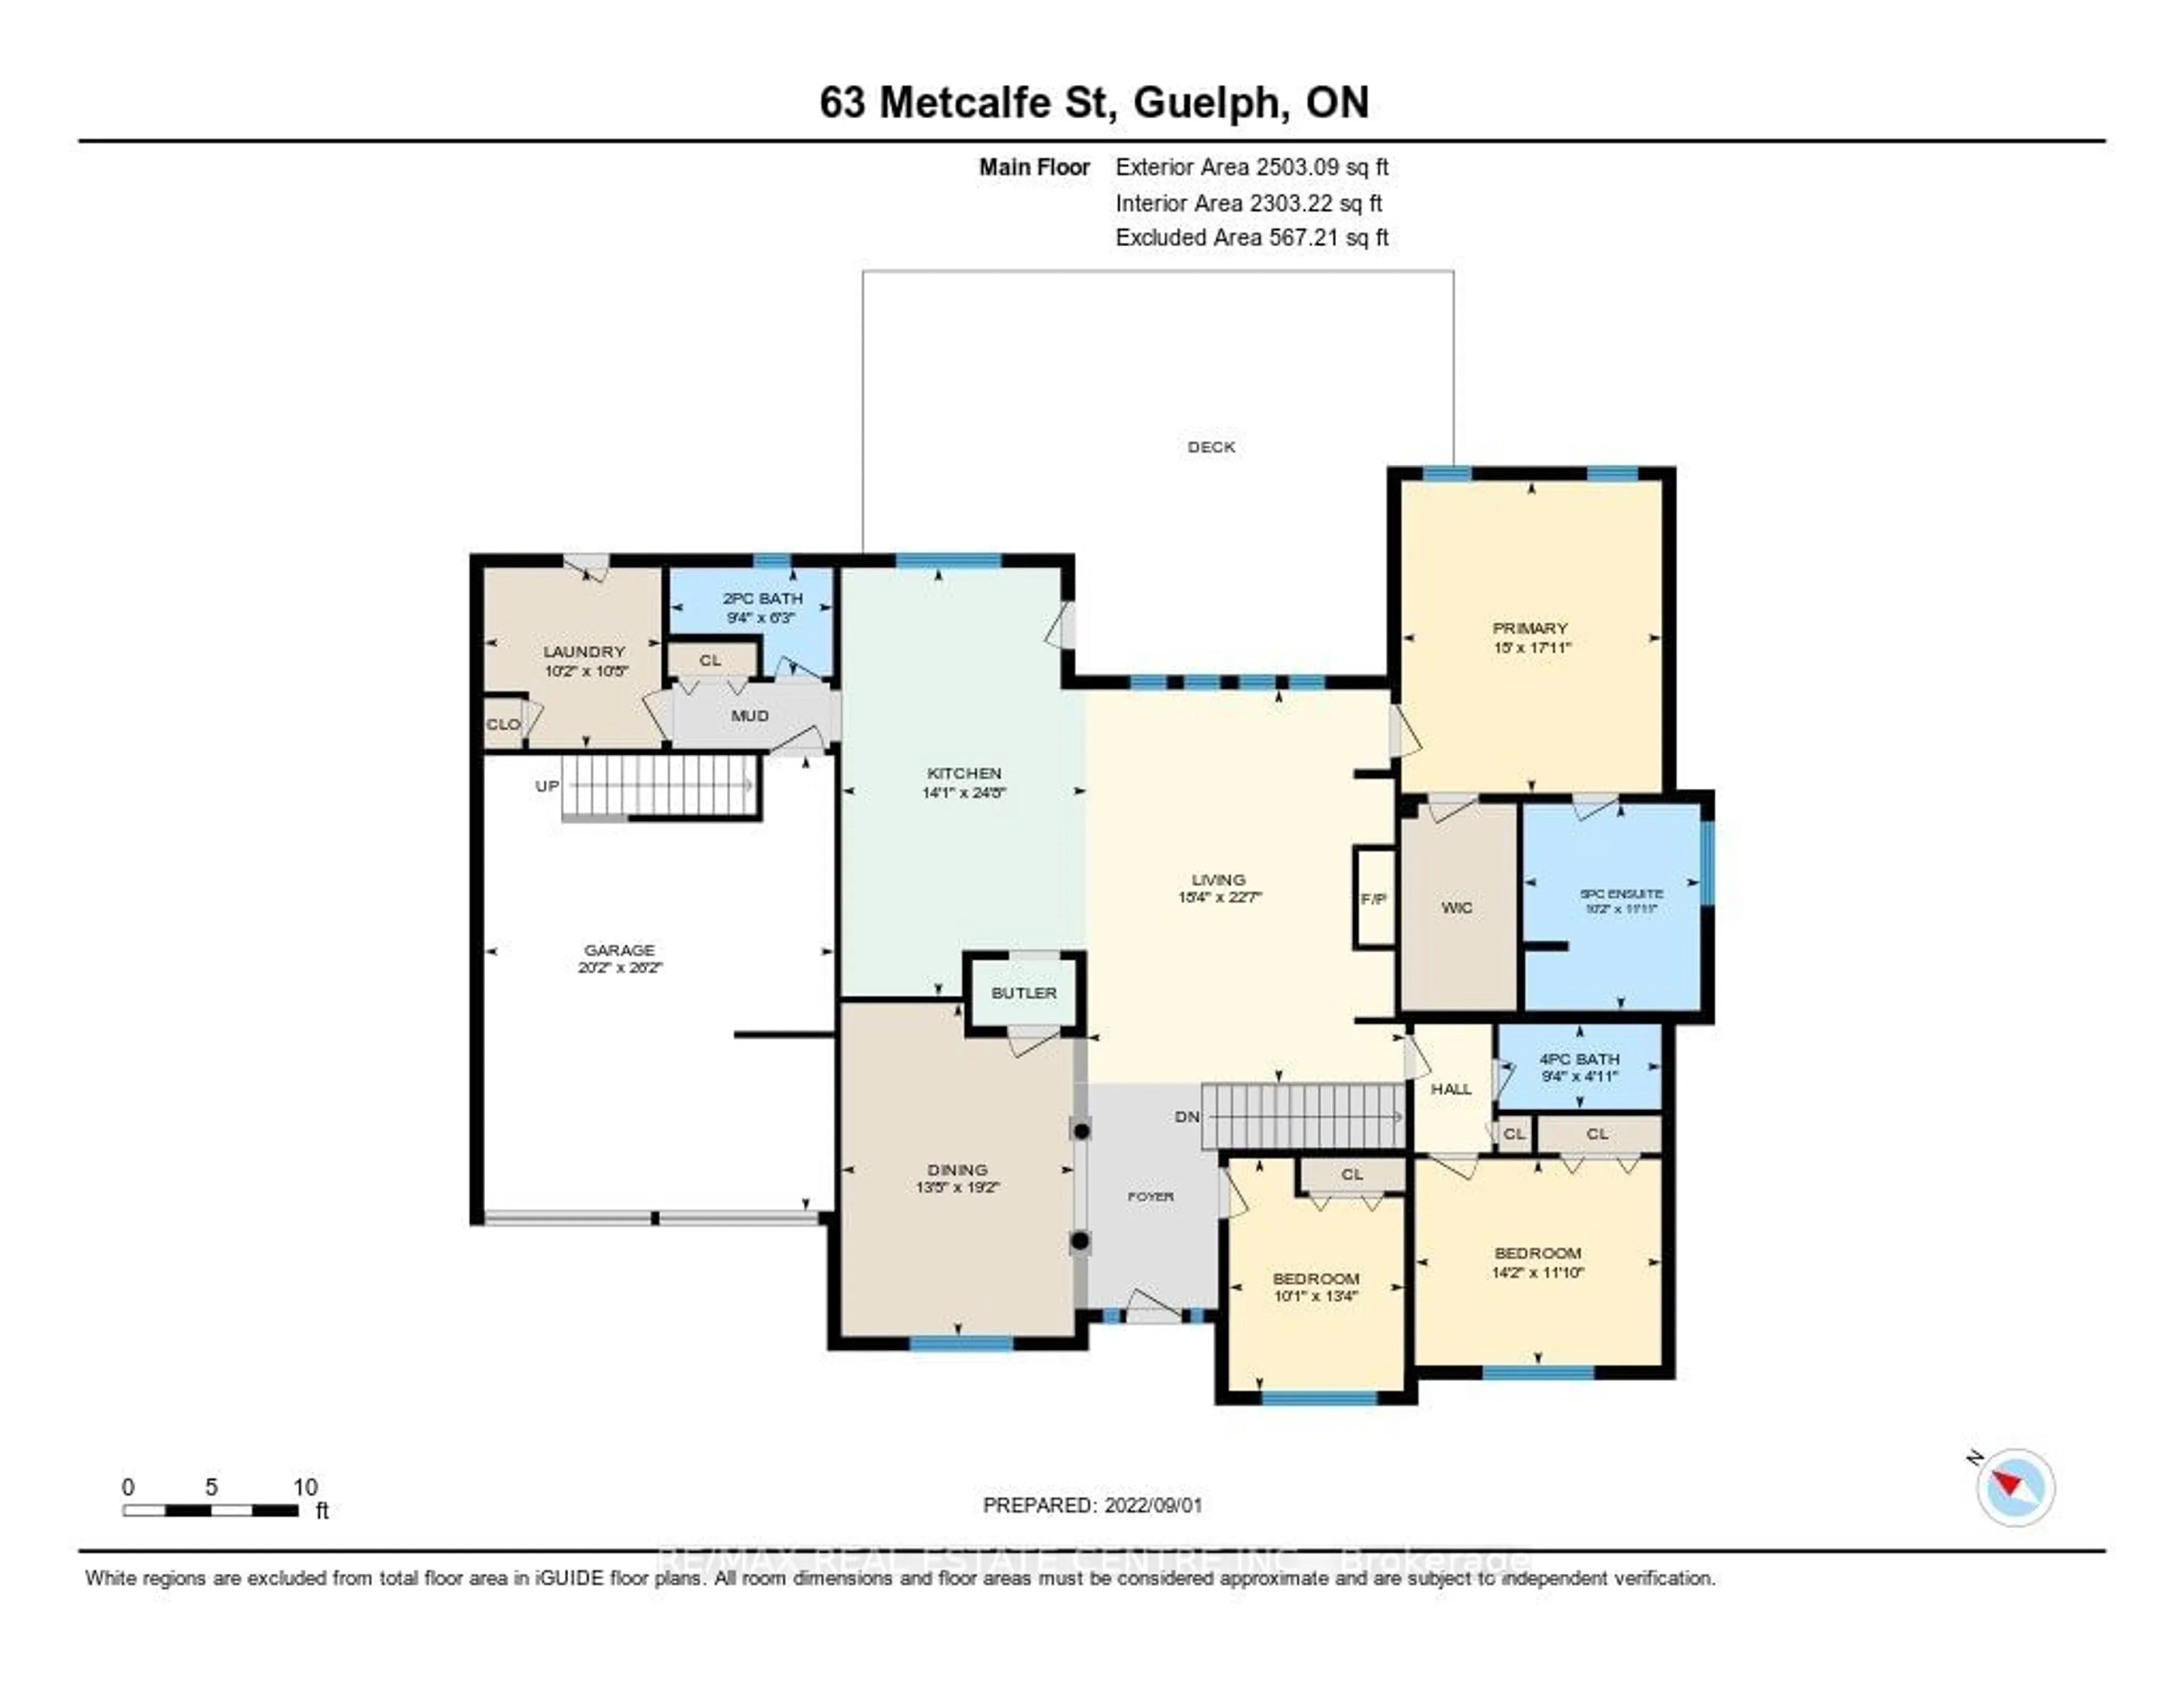 Floor plan for 63 Metcalfe St, Guelph Ontario N1E 4X7